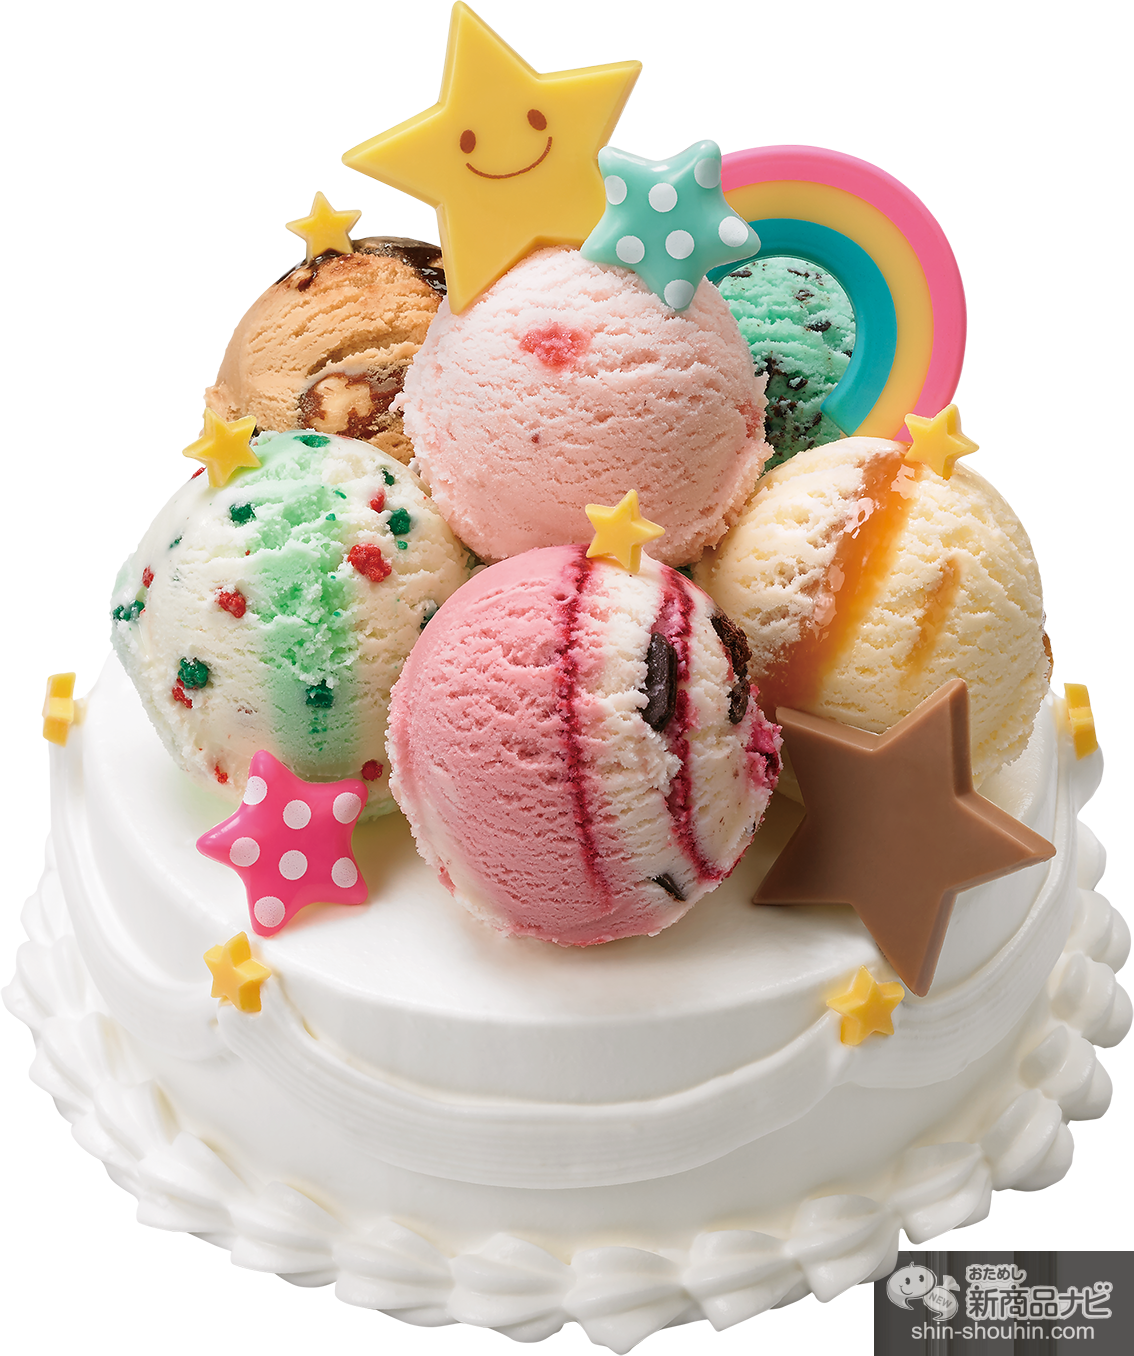 おためし新商品ナビ Blog Archive サーティワン アイスクリーム 今月の新商品 21年3月10日付 オリジナルアイスケーキが作れる 31 デコケーキ カラフル ポップ や 韓国で人気のアーモンド菓子をイメージした ハッピーバターアーモンド